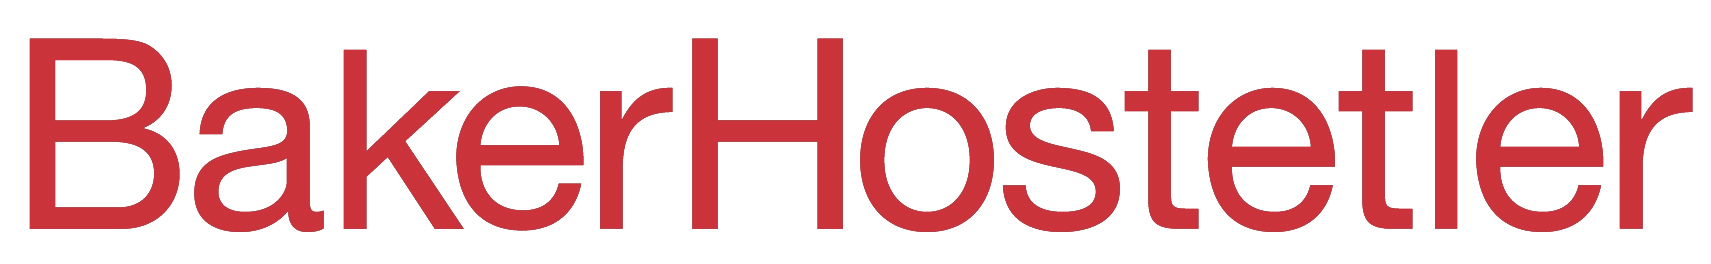 BakerHostetler logo - the letters BakerHostetler in red